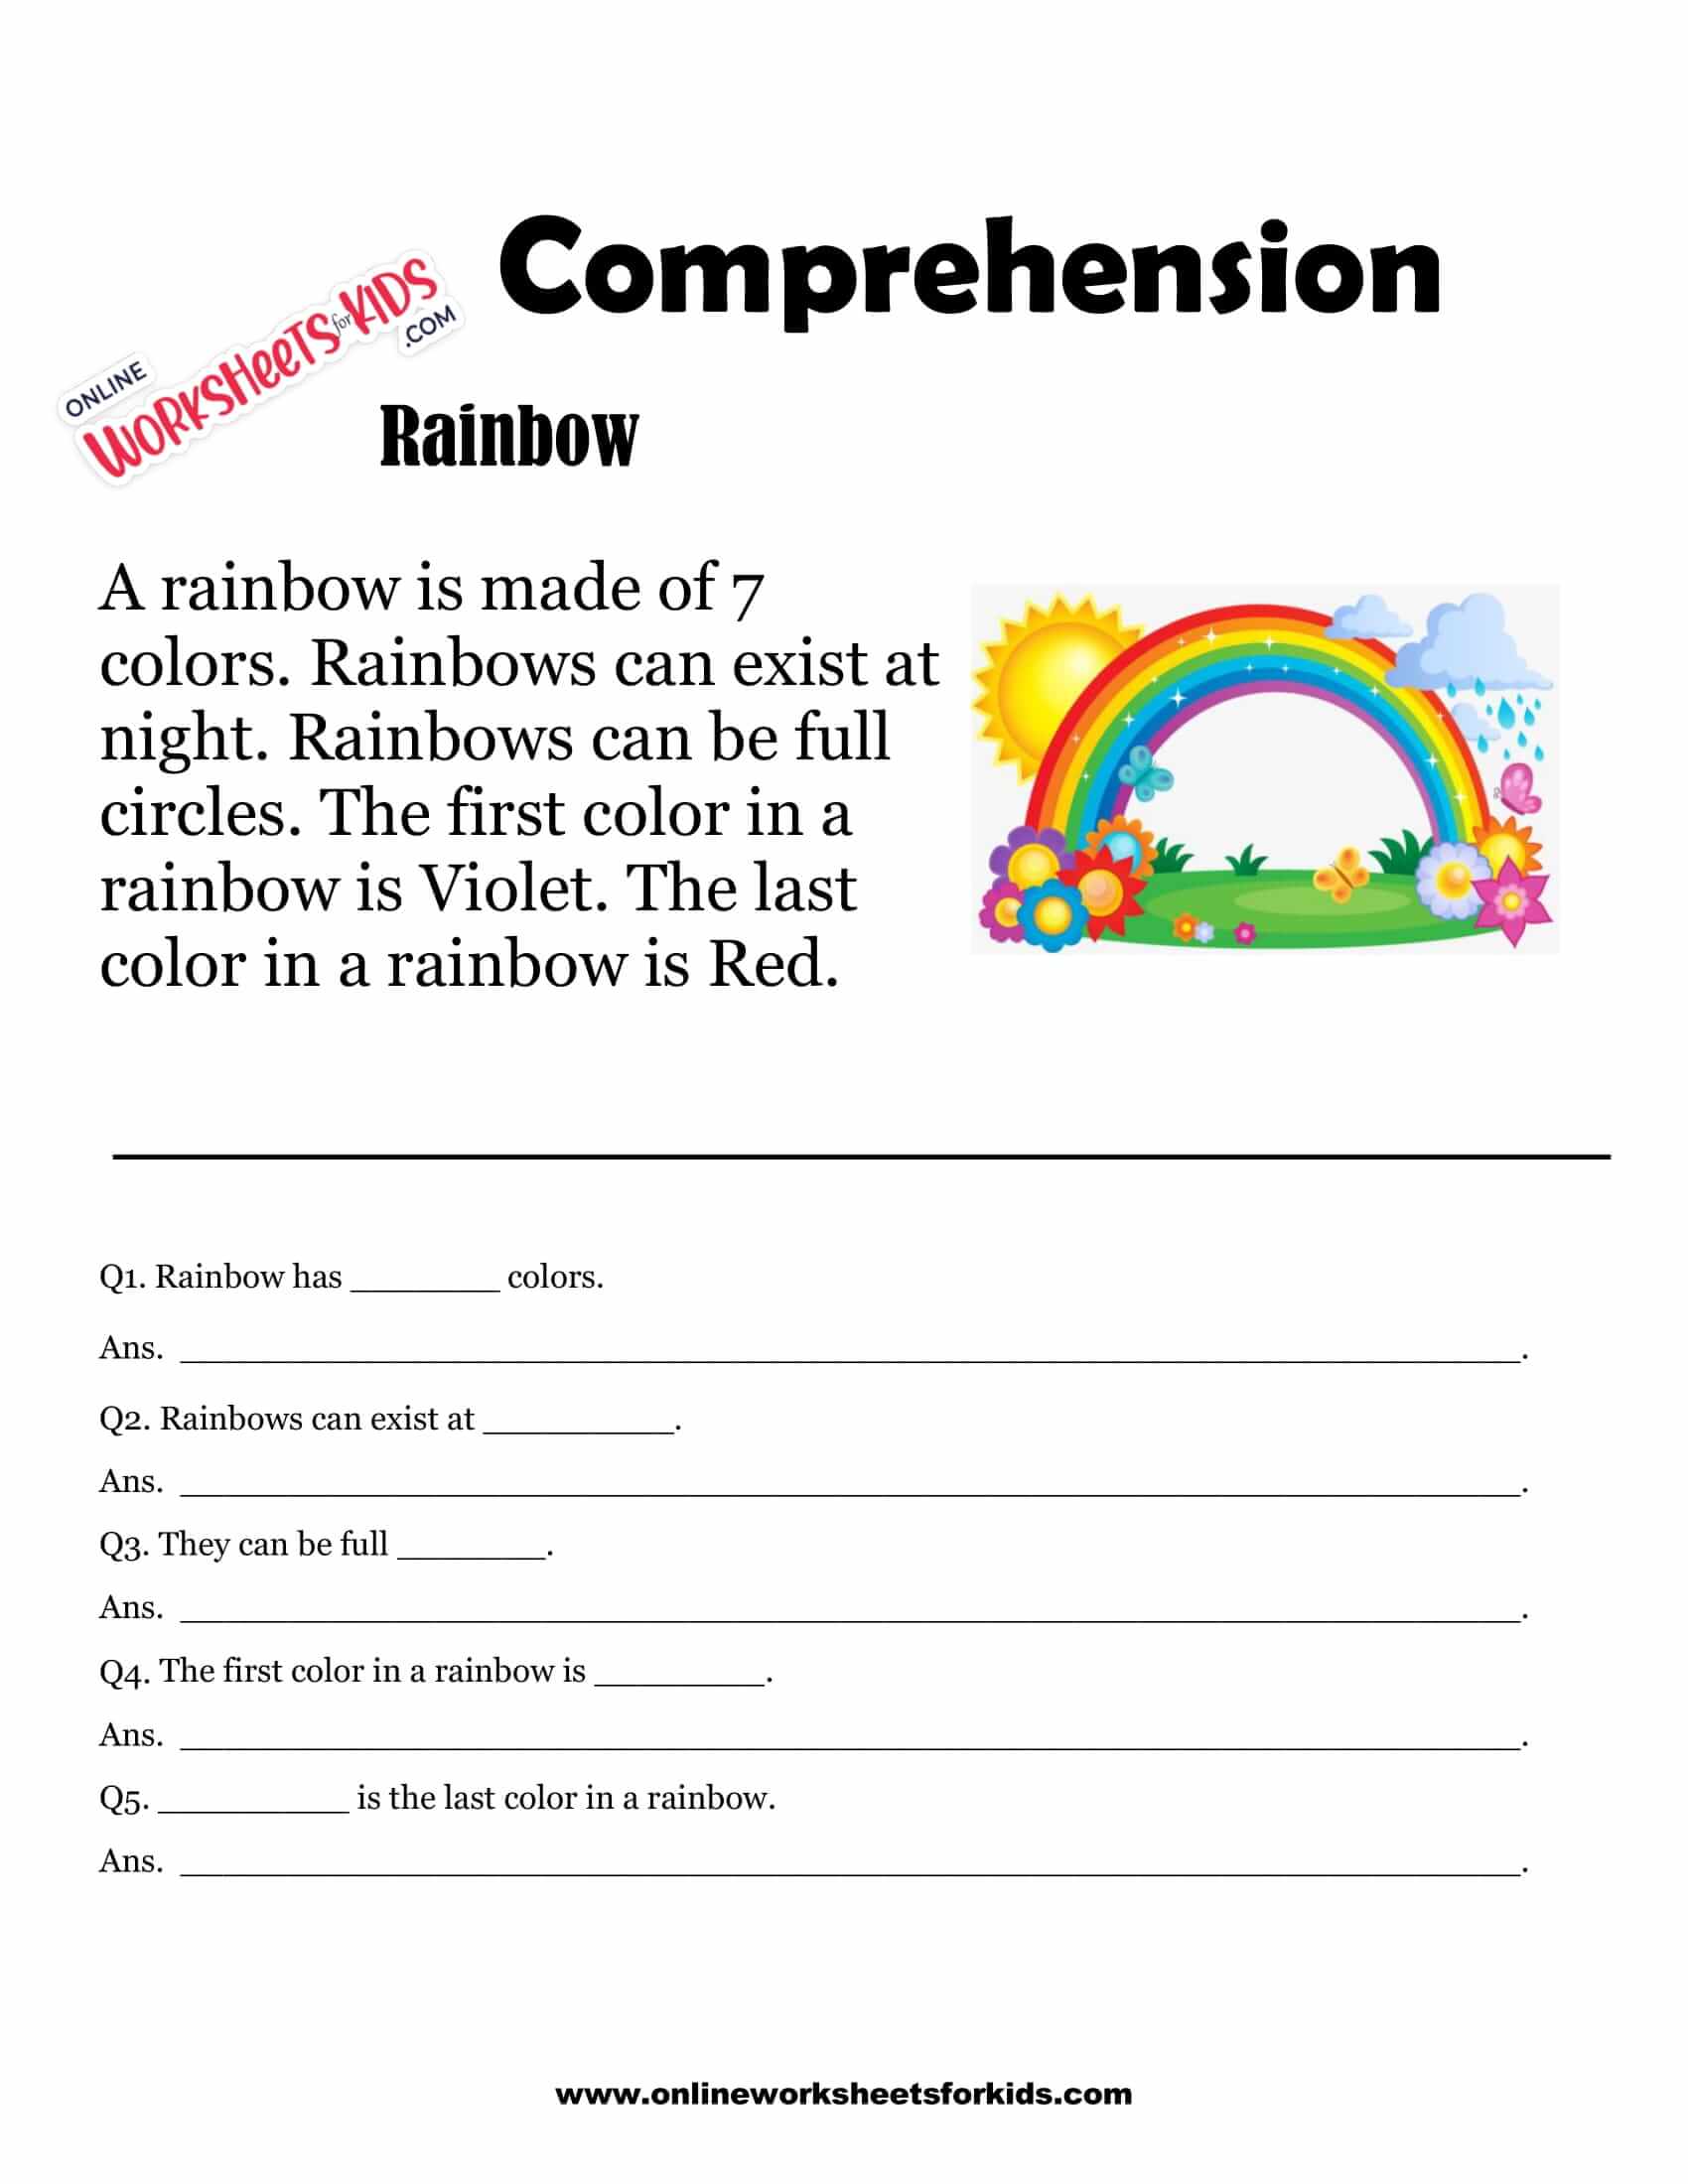 Free Printable Comprehension Worksheets For Grade 1